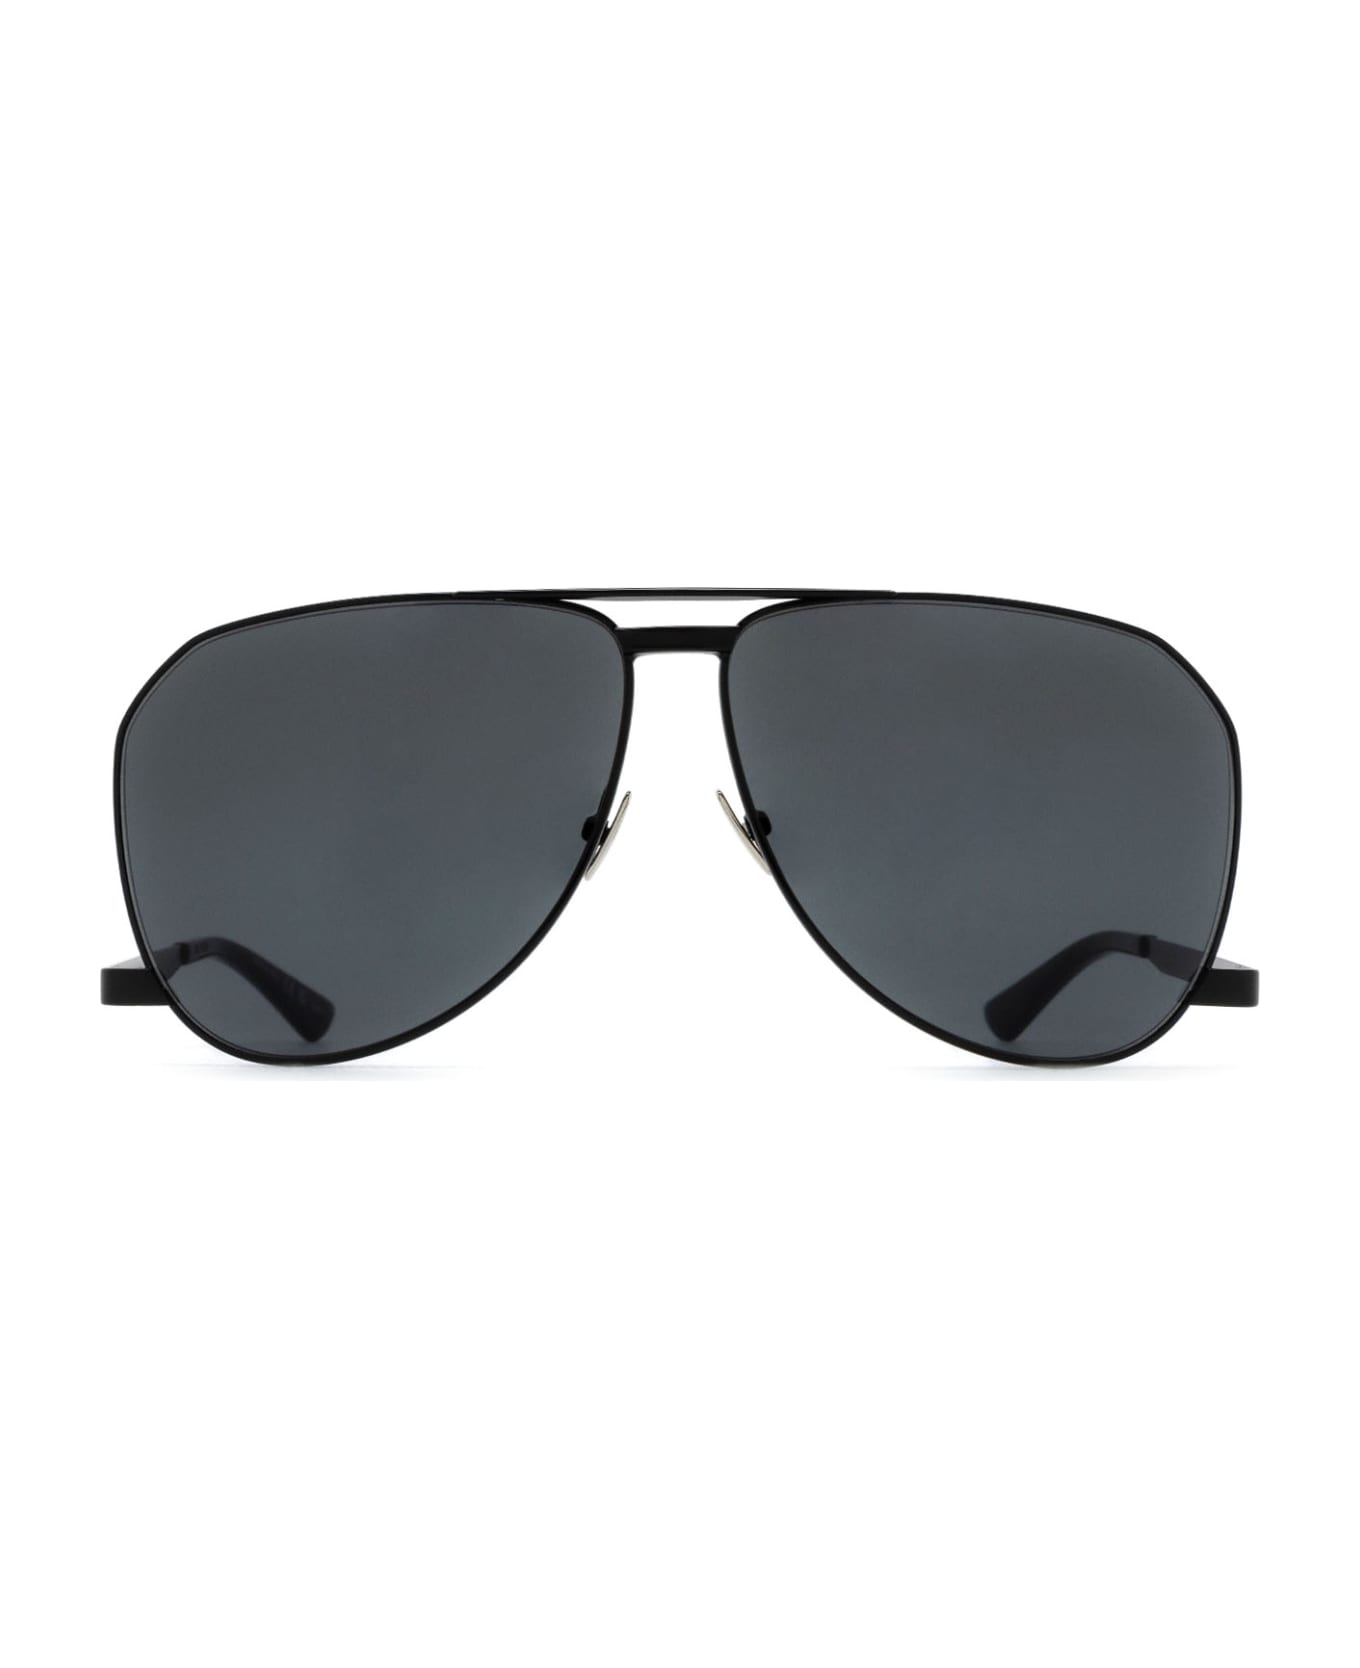 Saint Laurent Eyewear Sl 690 Black Sunglasses - Black